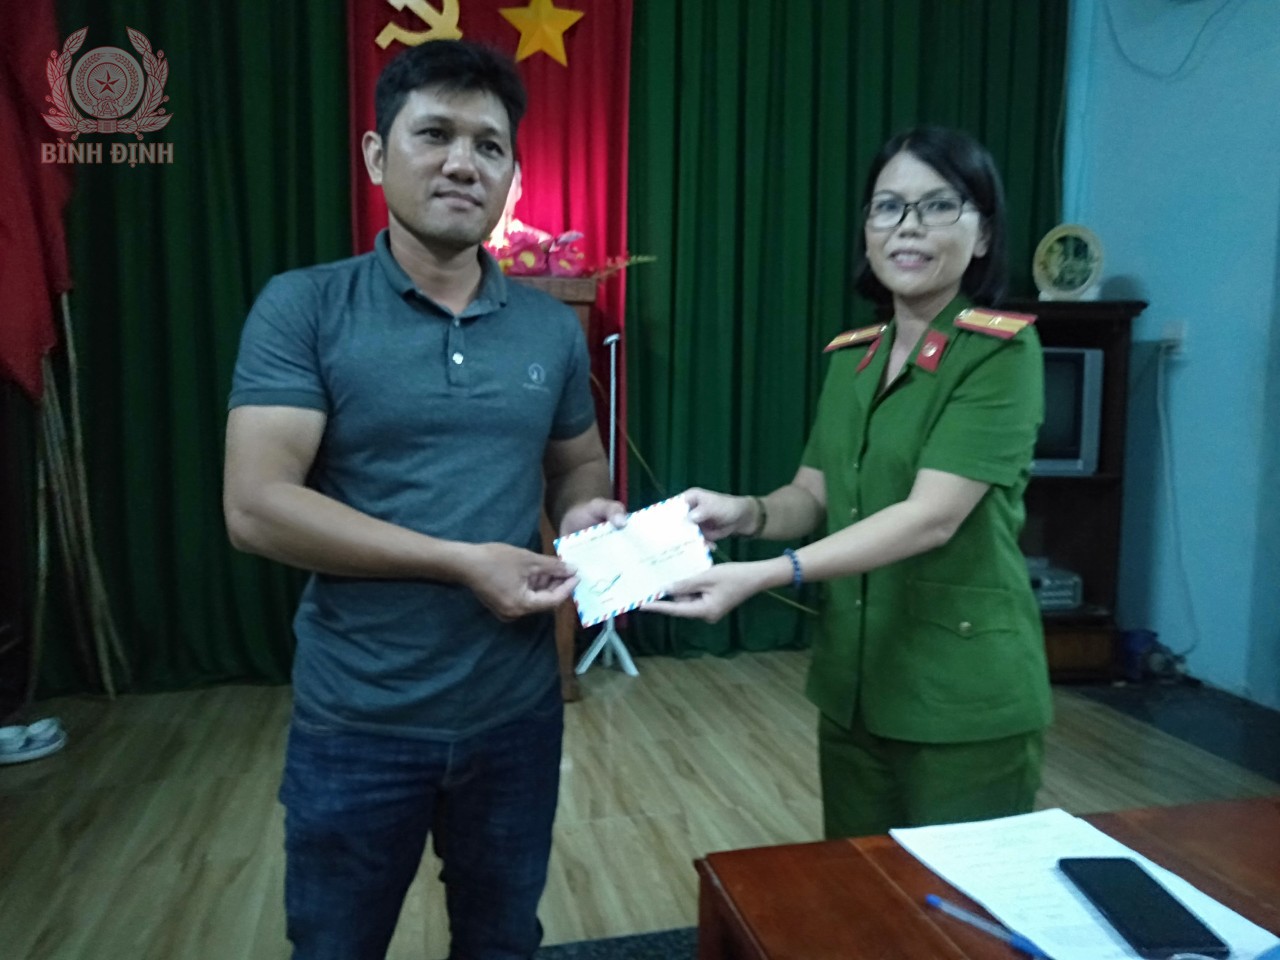 Thiếu tá Nguyễn Thị Kim Chung - Trưởng Công an xã Hoài Châu, thị xã Hoài Nhơn.